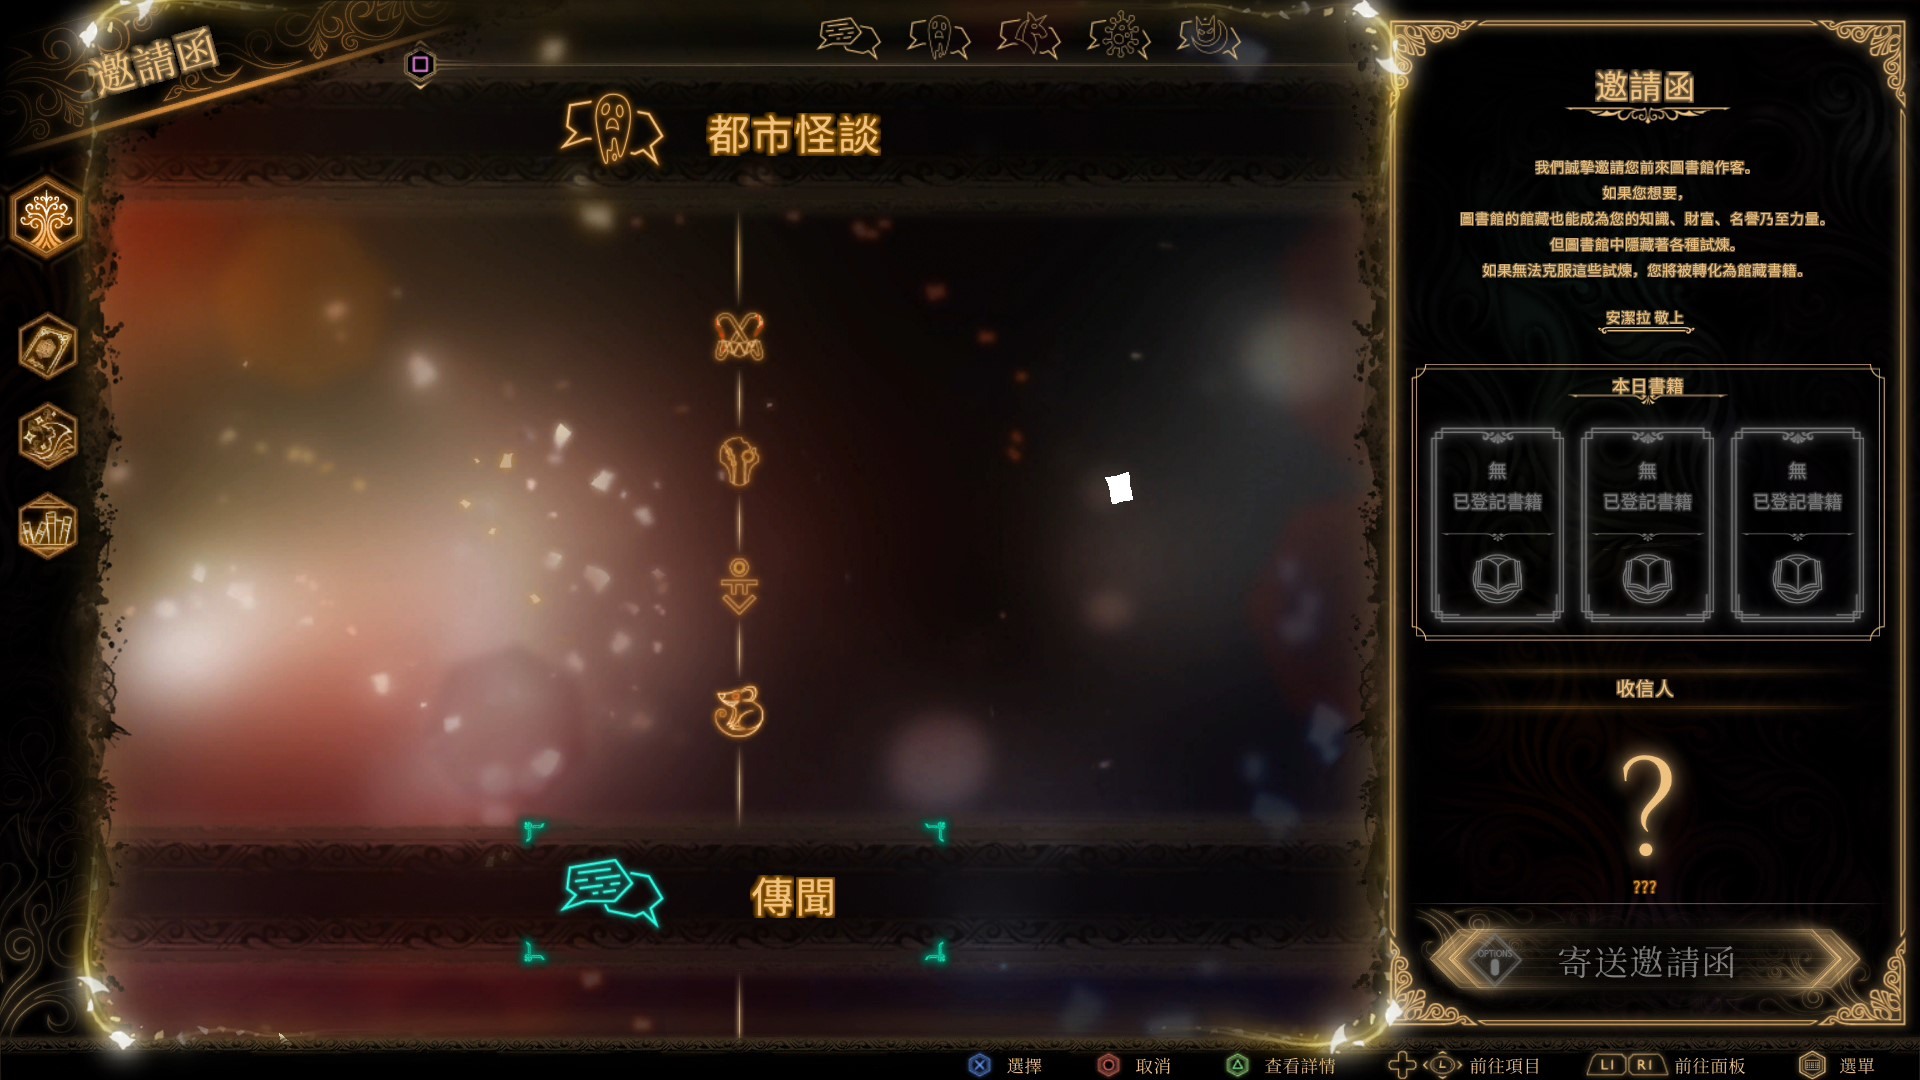 图书馆战斗模拟游戏《废墟图书馆》公开中文实体版预售相关资讯